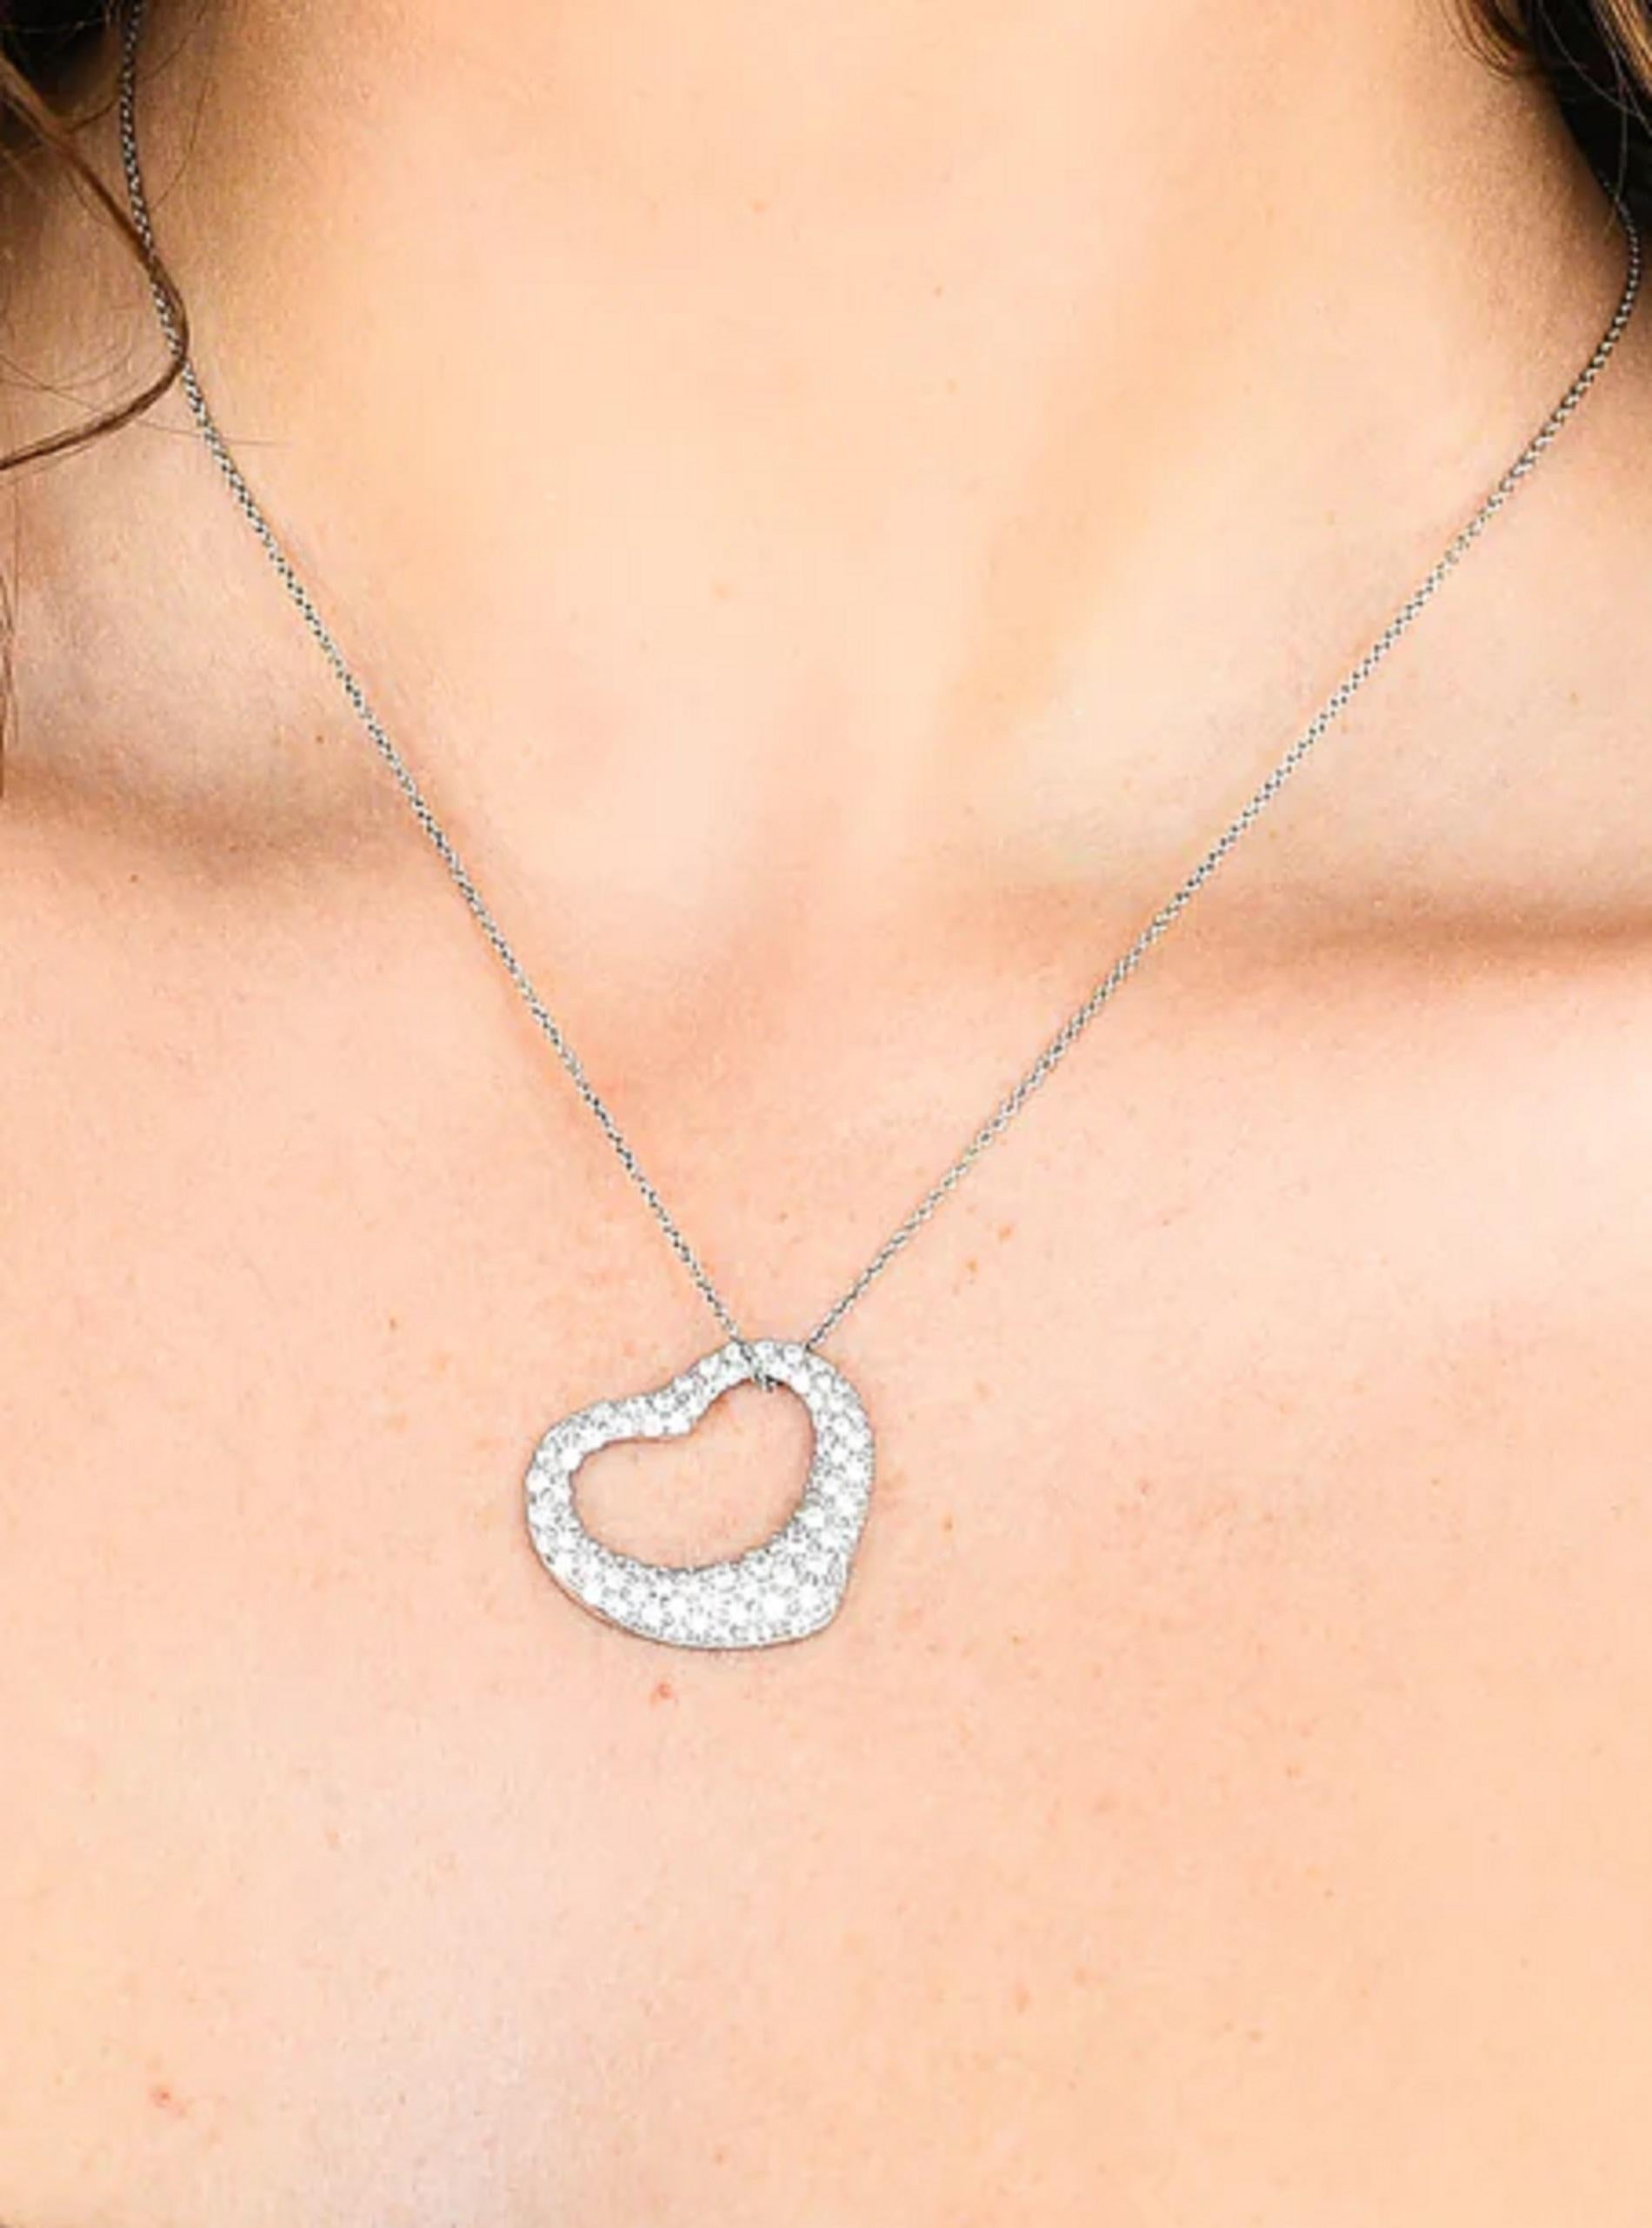 Tiffany & Co. 3.5 Carat Heart Shape Pave Pendant Platinum Necklace

